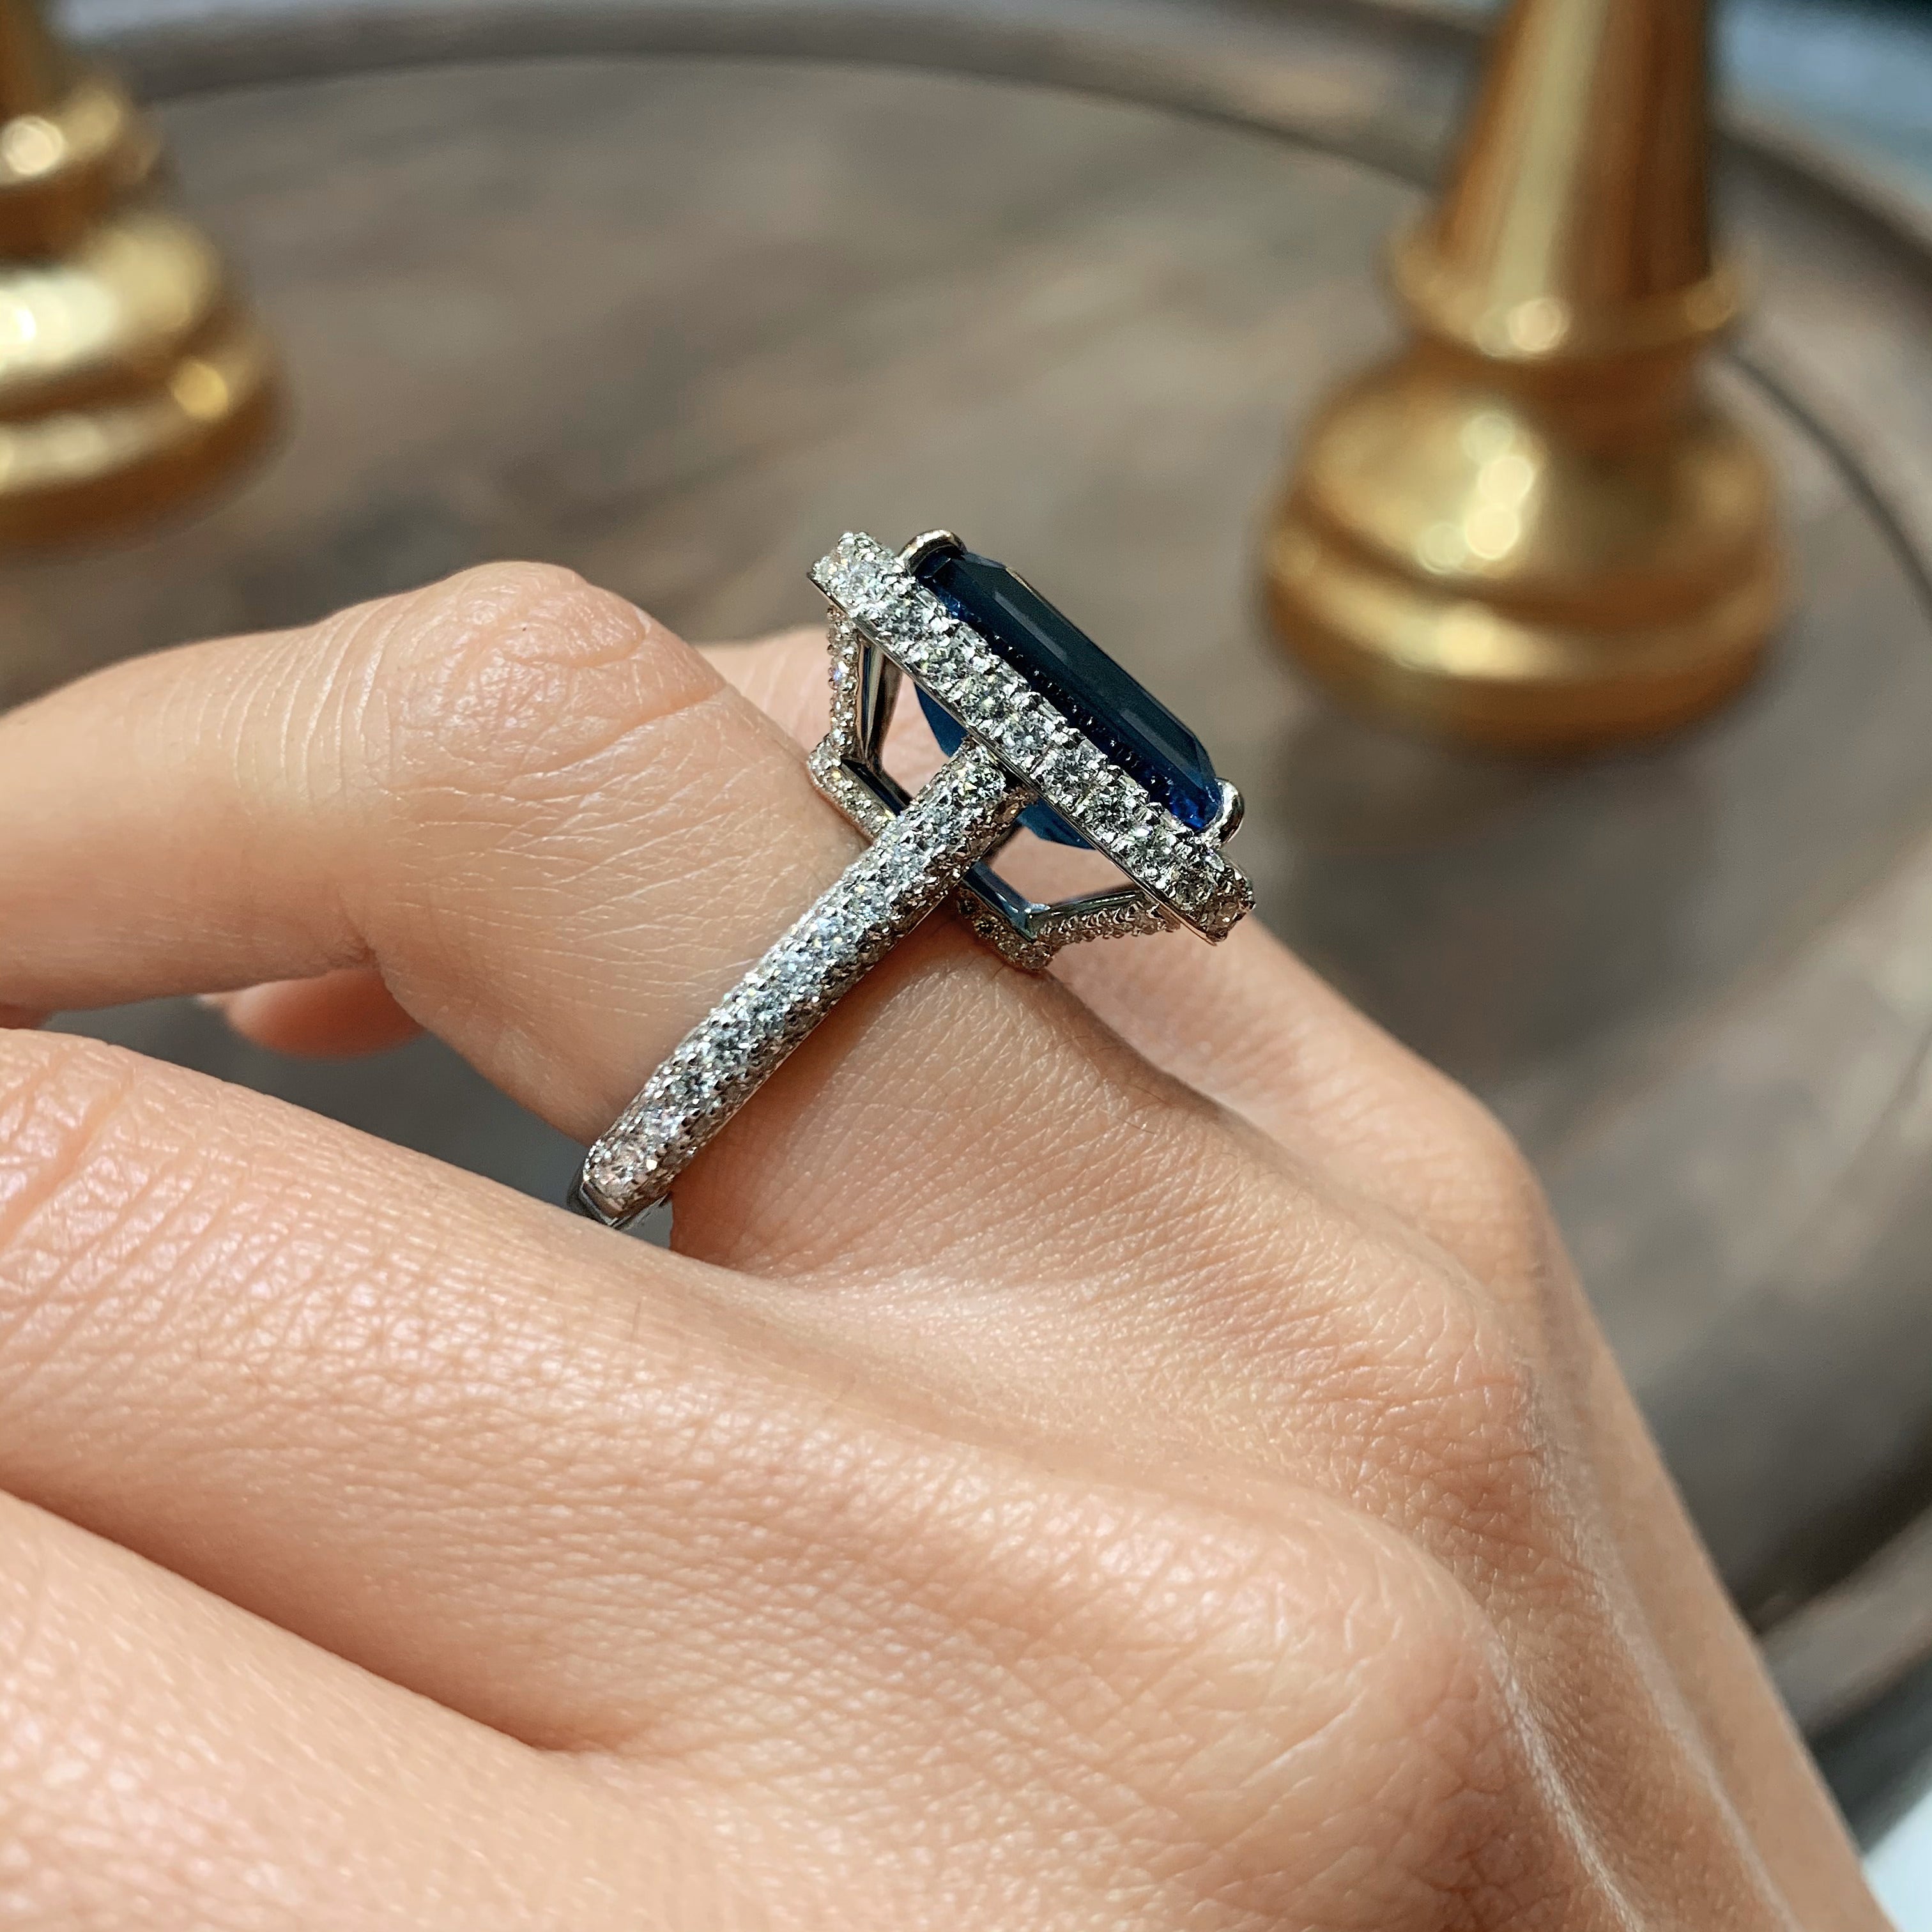 Mackenzie Gemstone & Diamonds Ring   (12 Carat) -18K White Gold